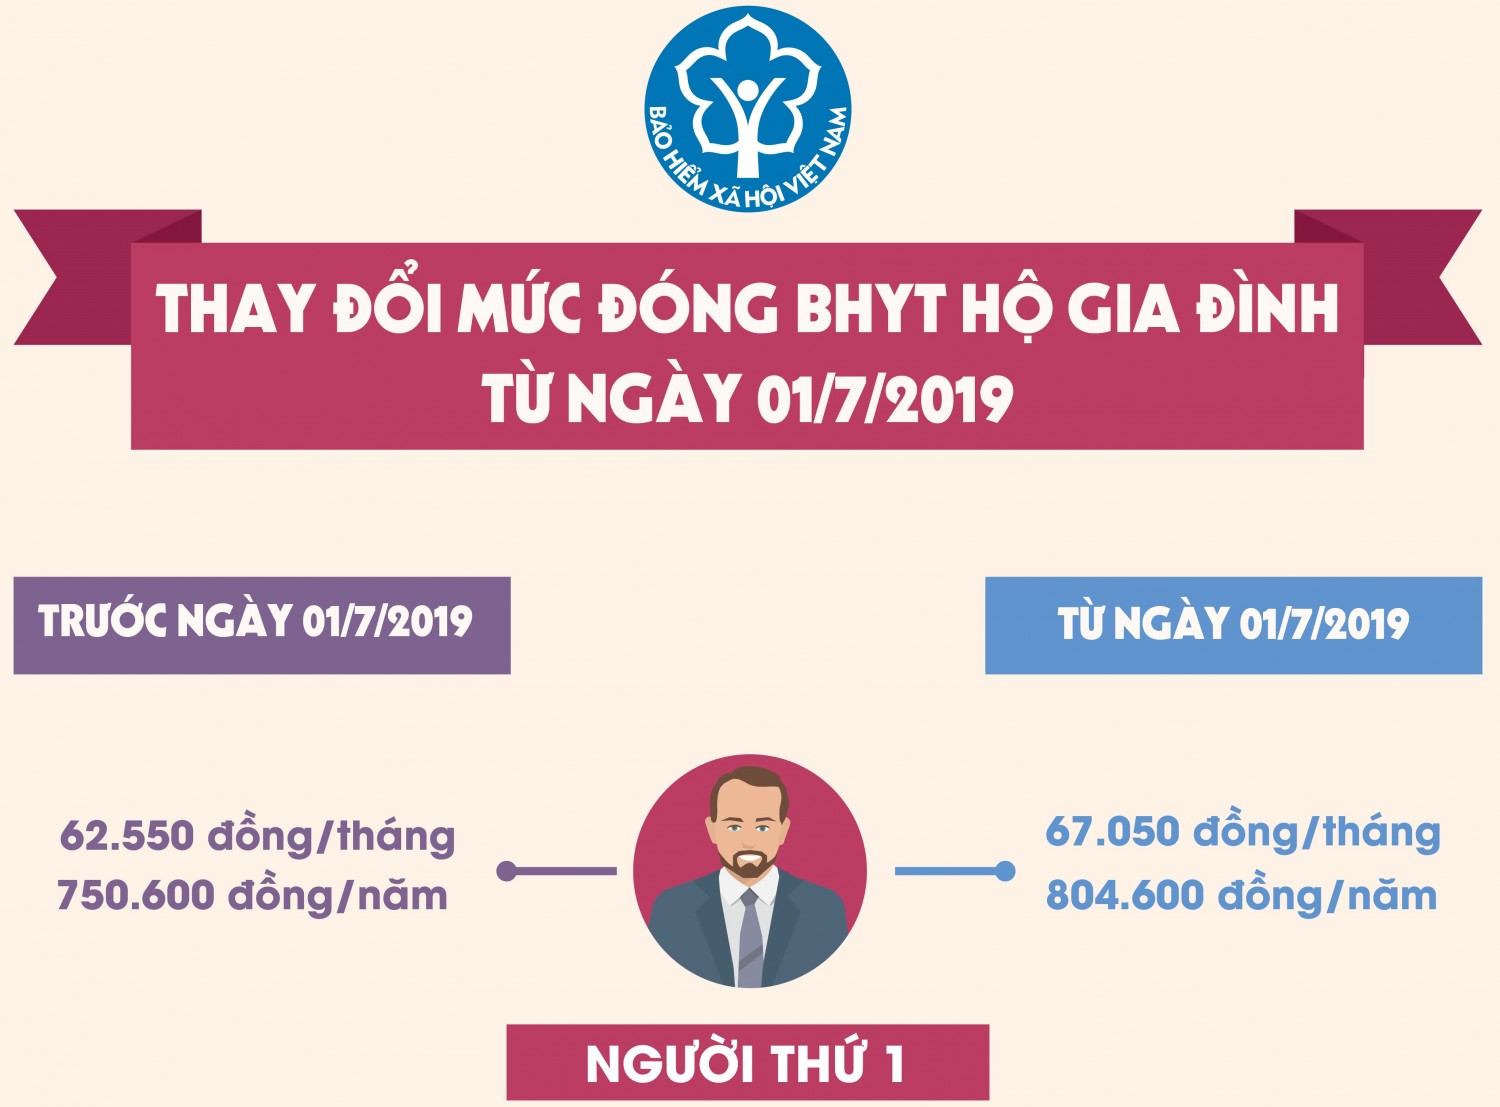 [Infographic] Từ ngày 01/7/2019, mức đóng BHYT hộ gia đình tăng cao nhất 4.500 đồng/tháng